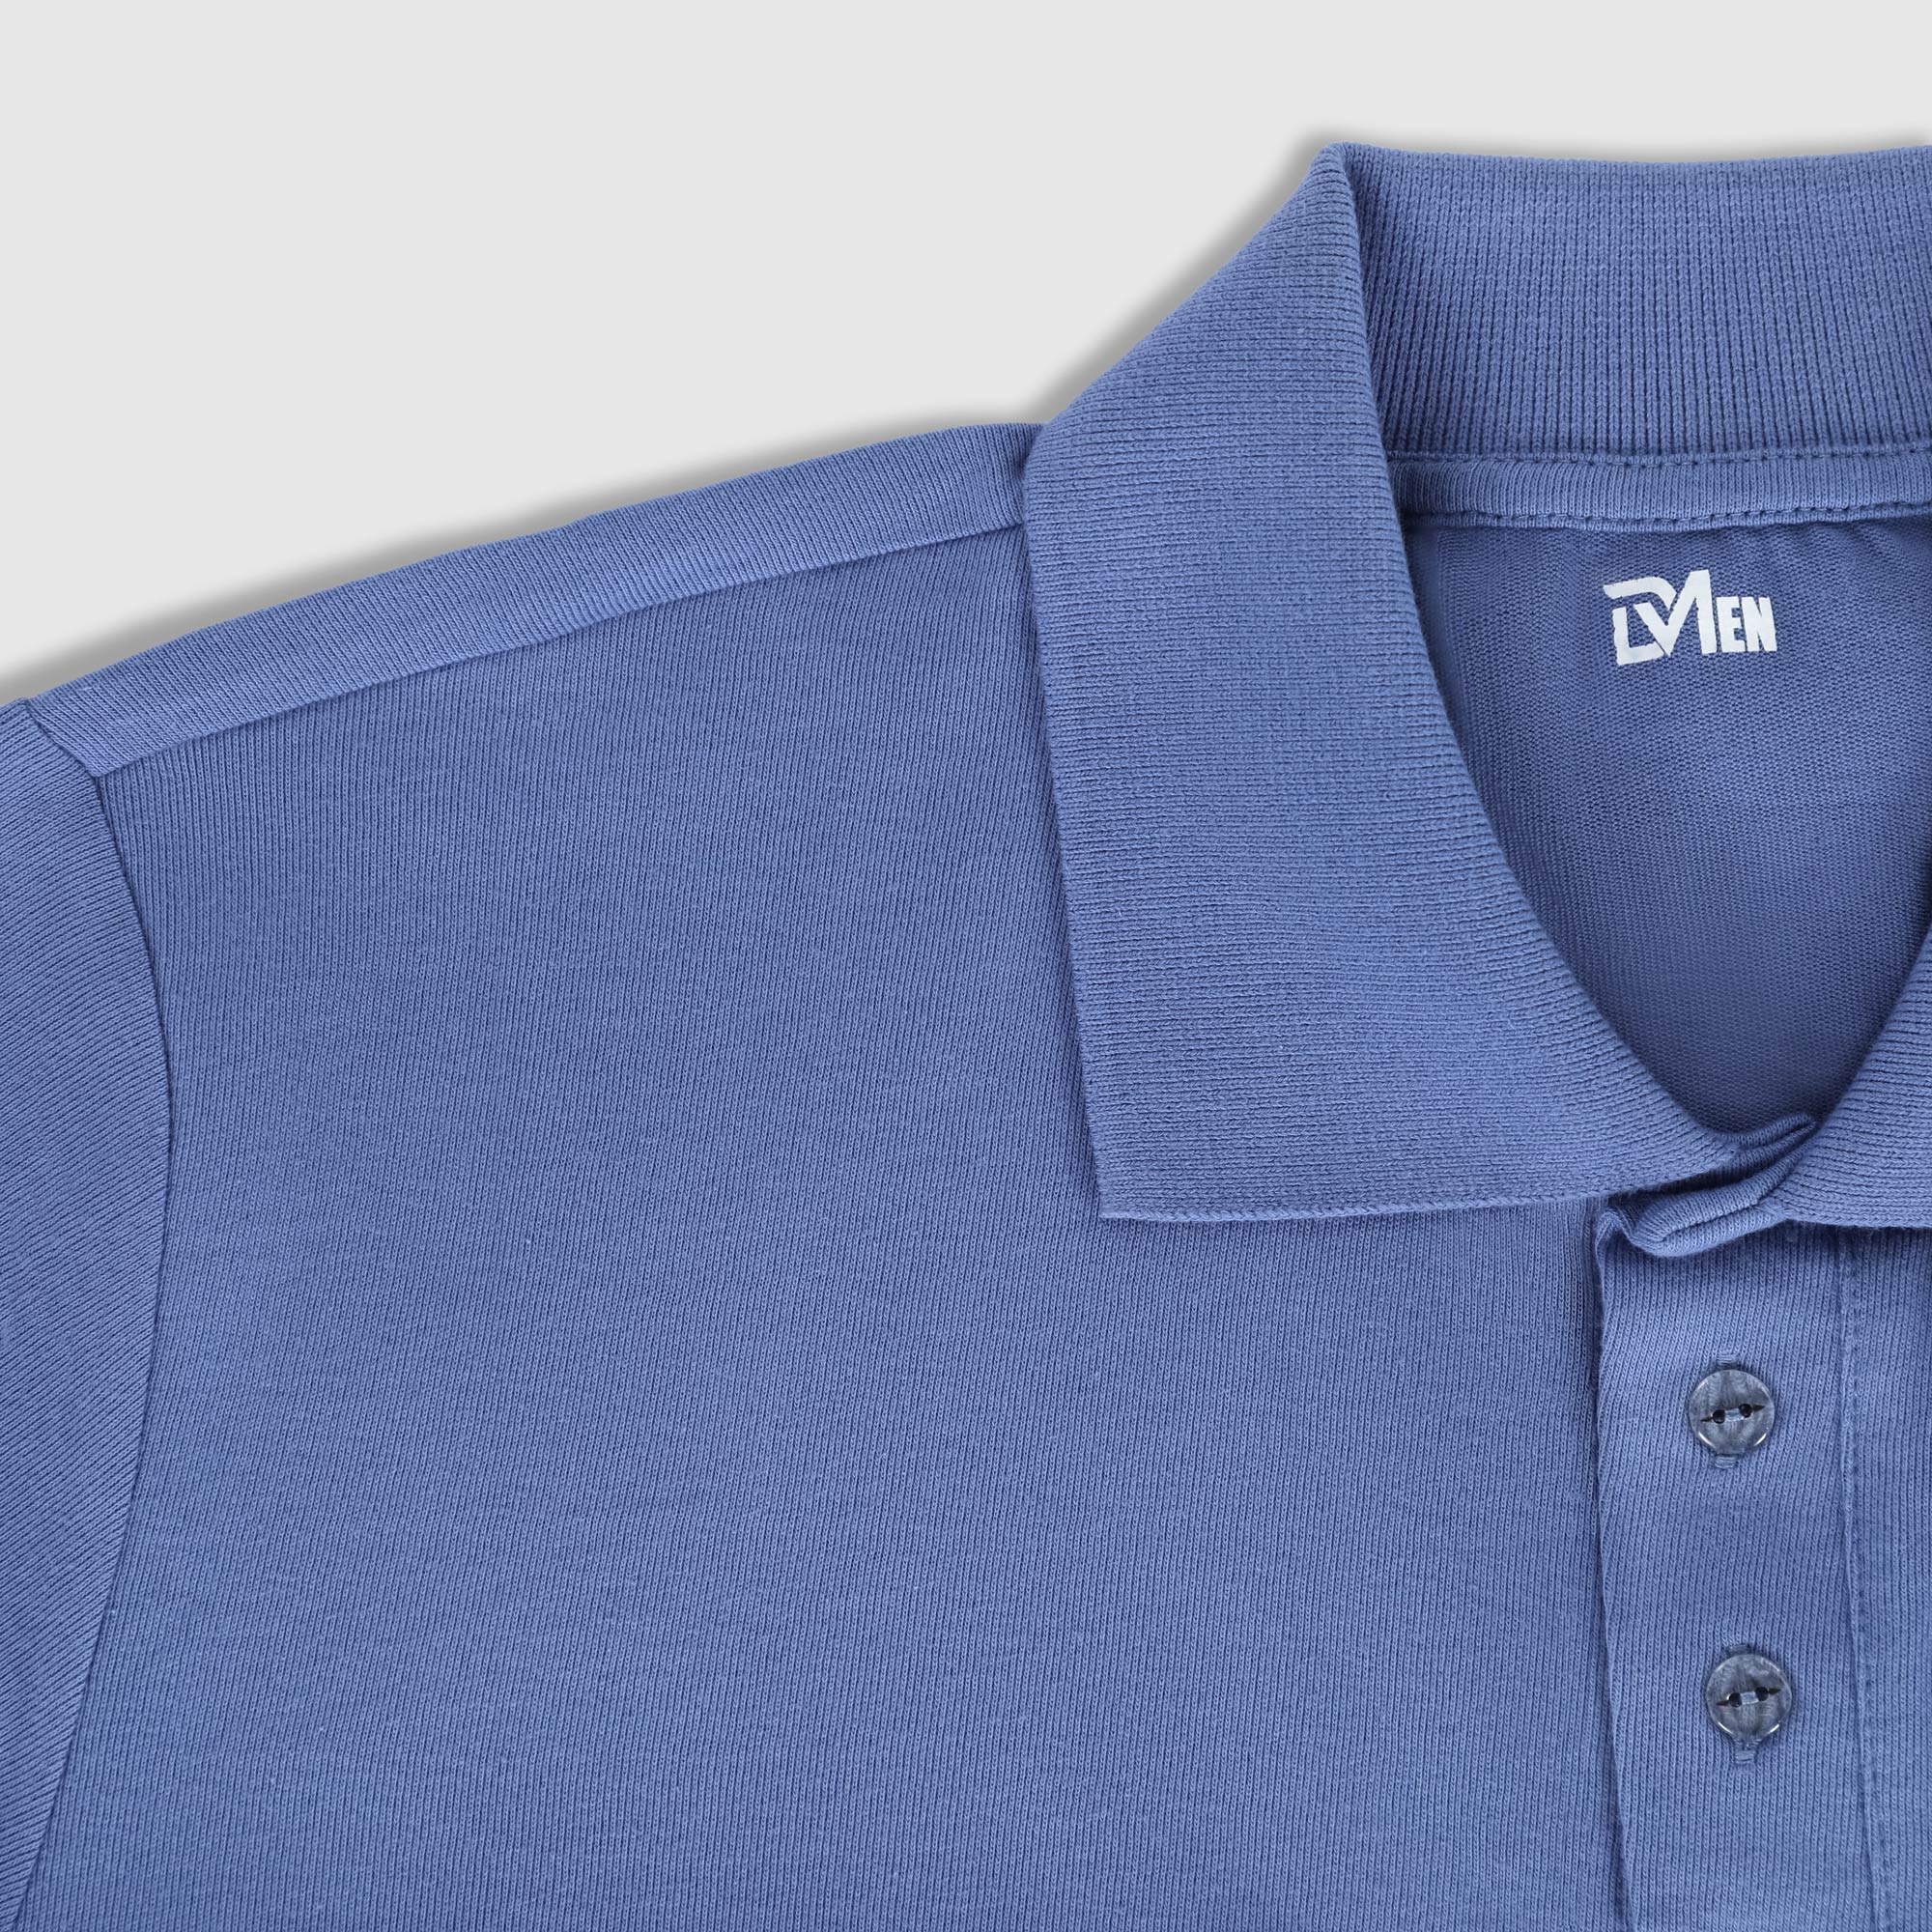 Рубашка мужская Diva Teks поло джинсовая, цвет джинсовый, размер XL - фото 3